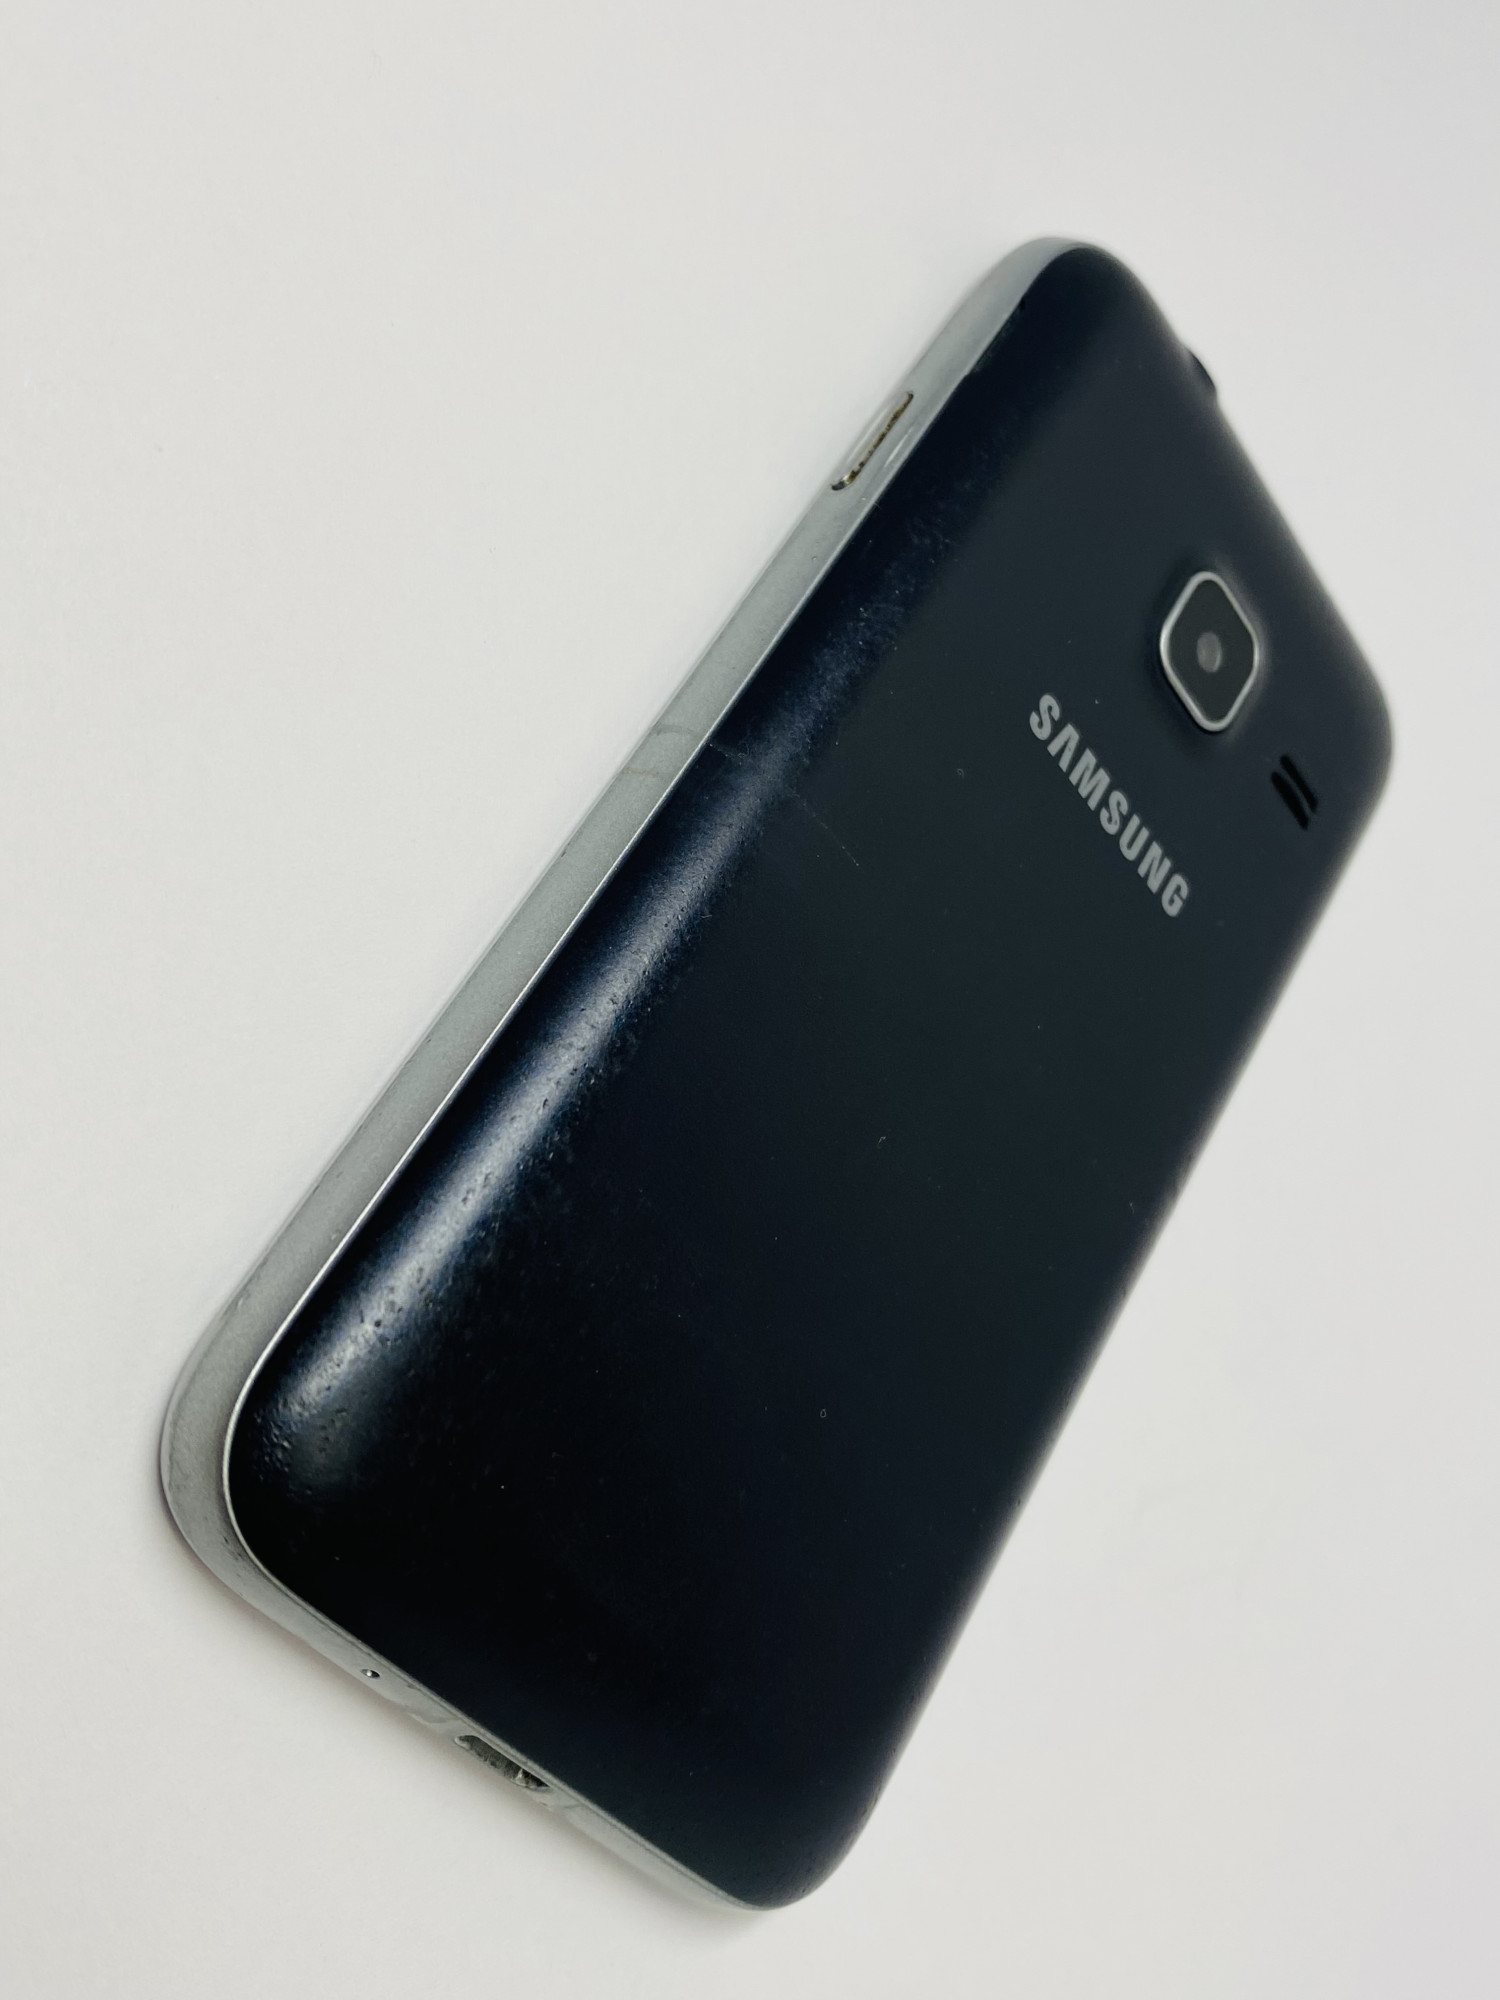 Samsung Galaxy J1 mini (SM-J105H) 1/8Gb 2